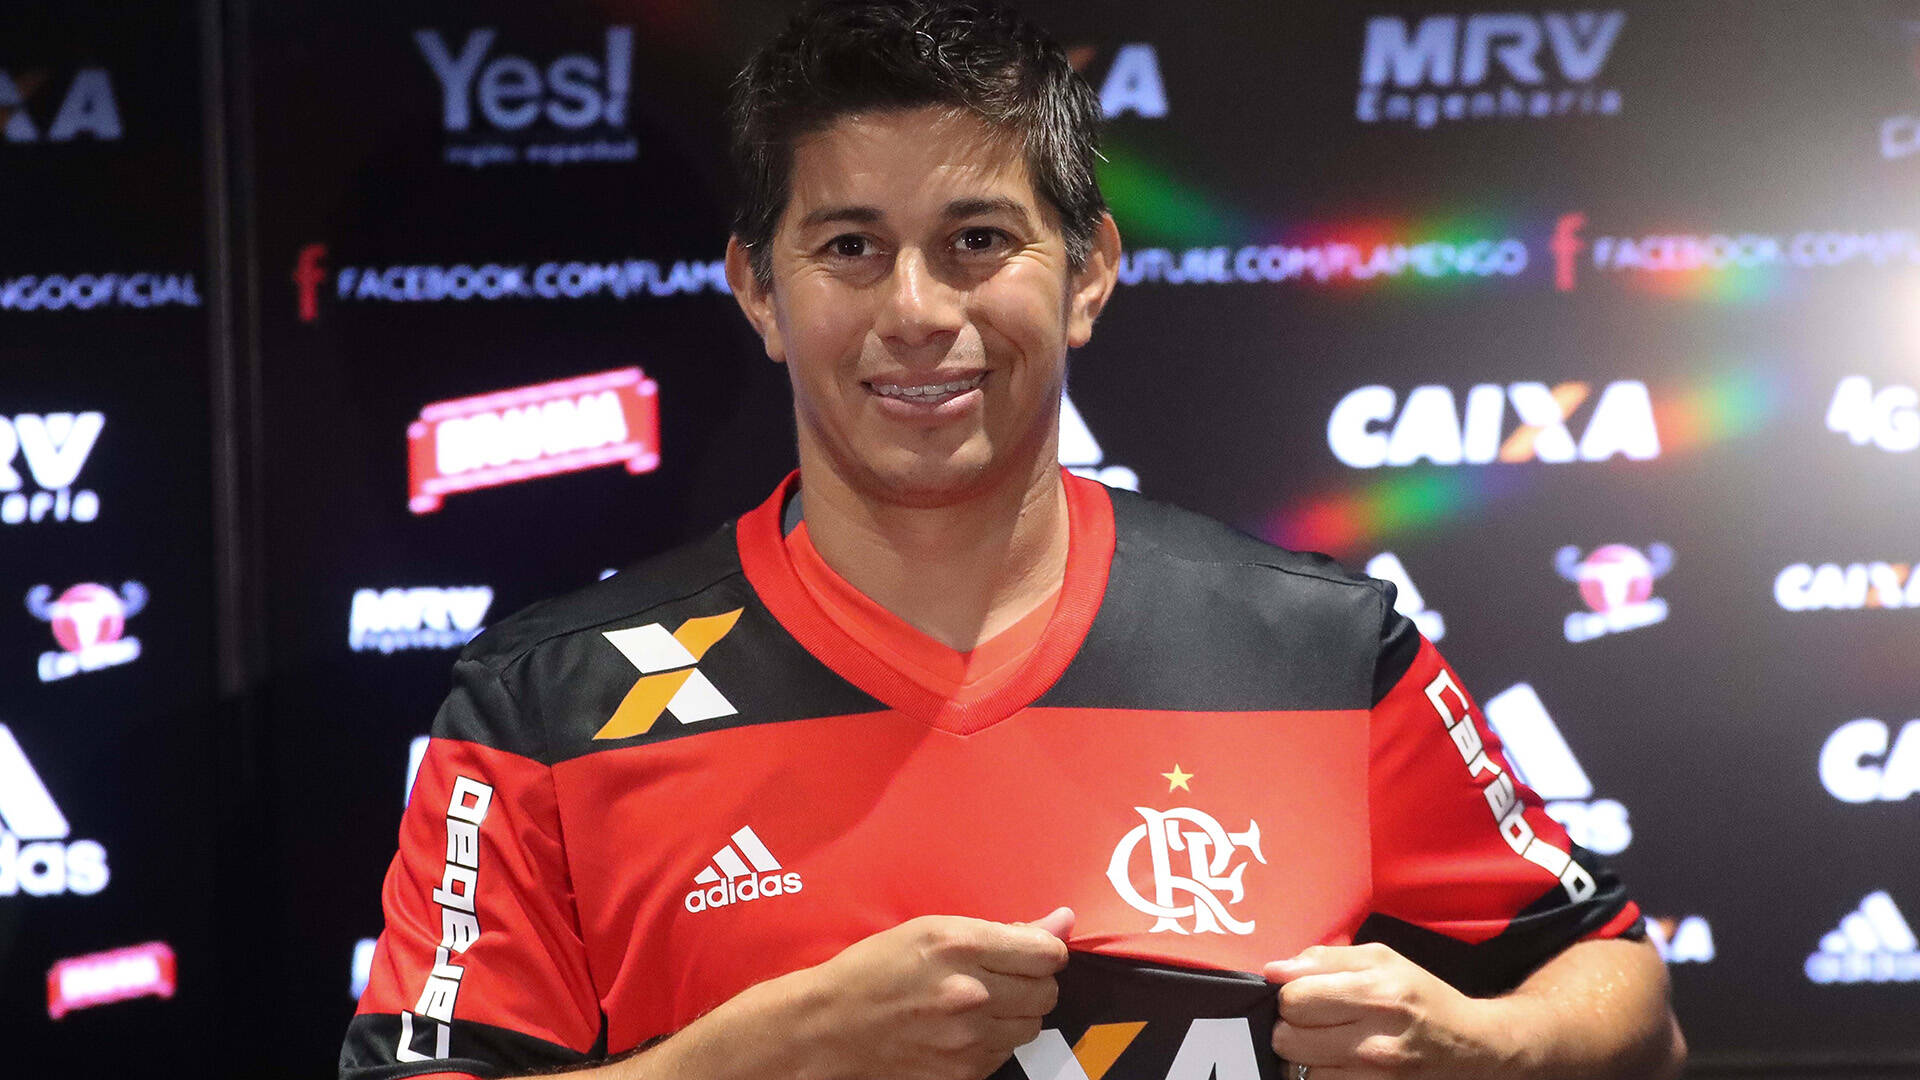 Conca deixou o Atlético Nacional para se juntar ao Flamengo em 2017. Foto: Reprodução